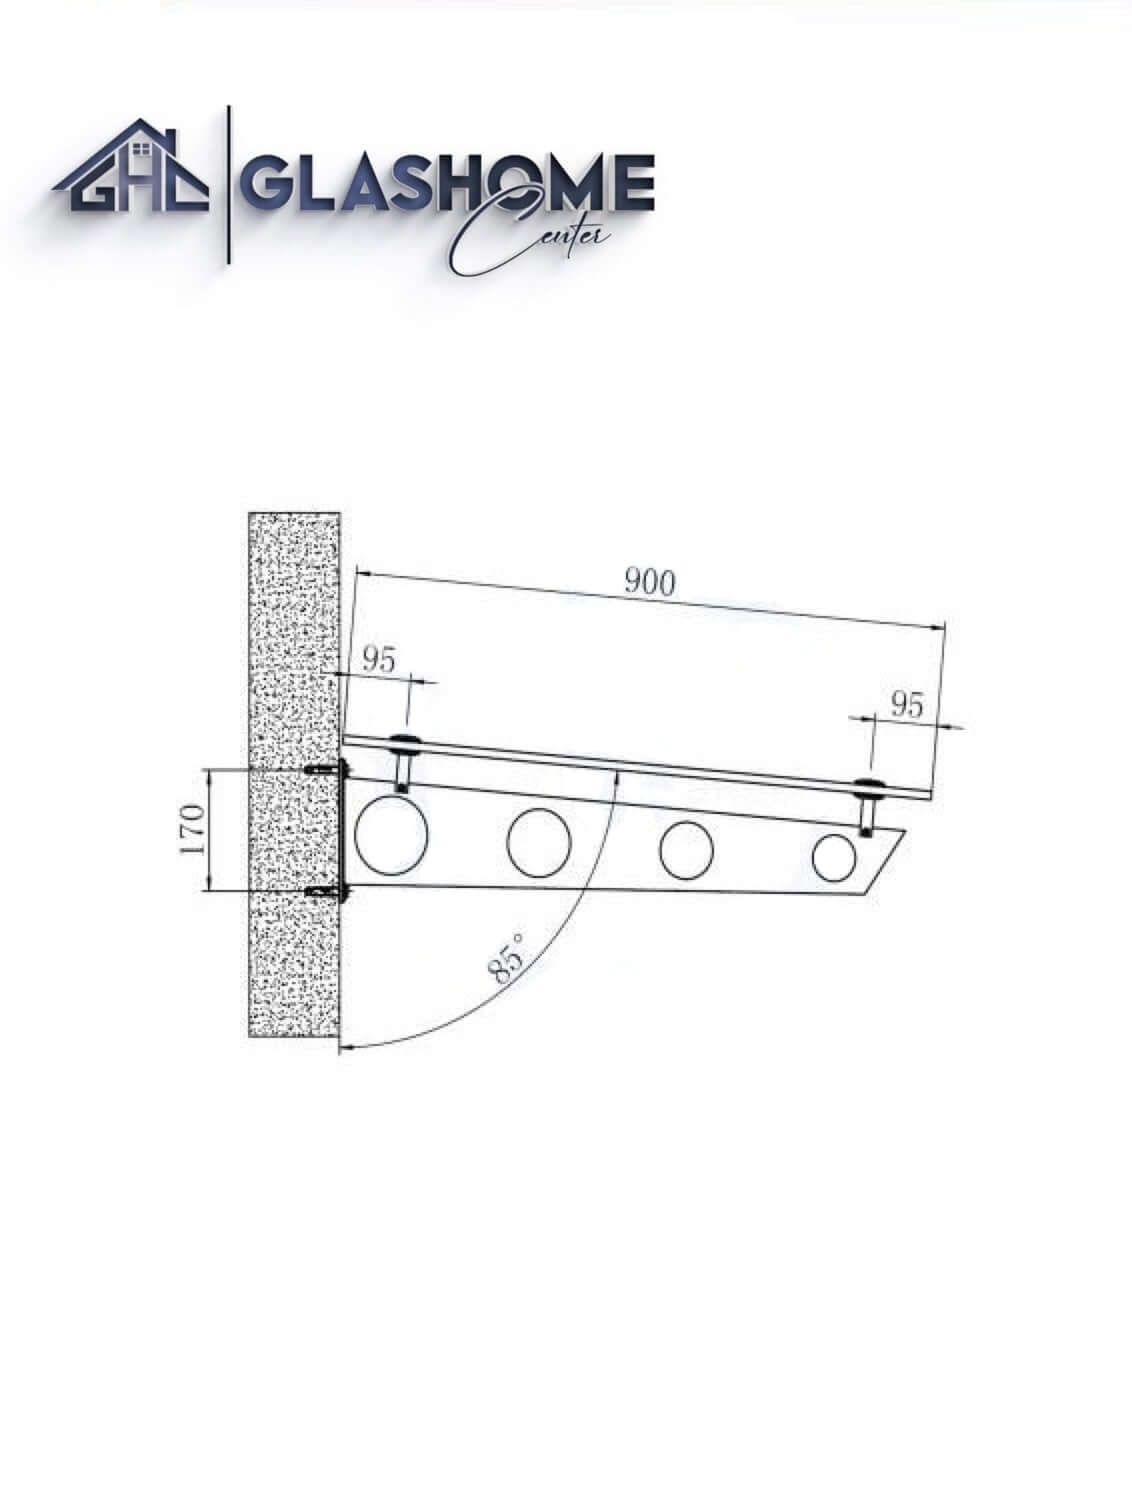 GlasHomeCenter - Glasvordach - Milchglas - 200x90cm - 13.1mm VSG - inkl. 2 schwarze Edelstahlhalterungen Variante "Stockholm"